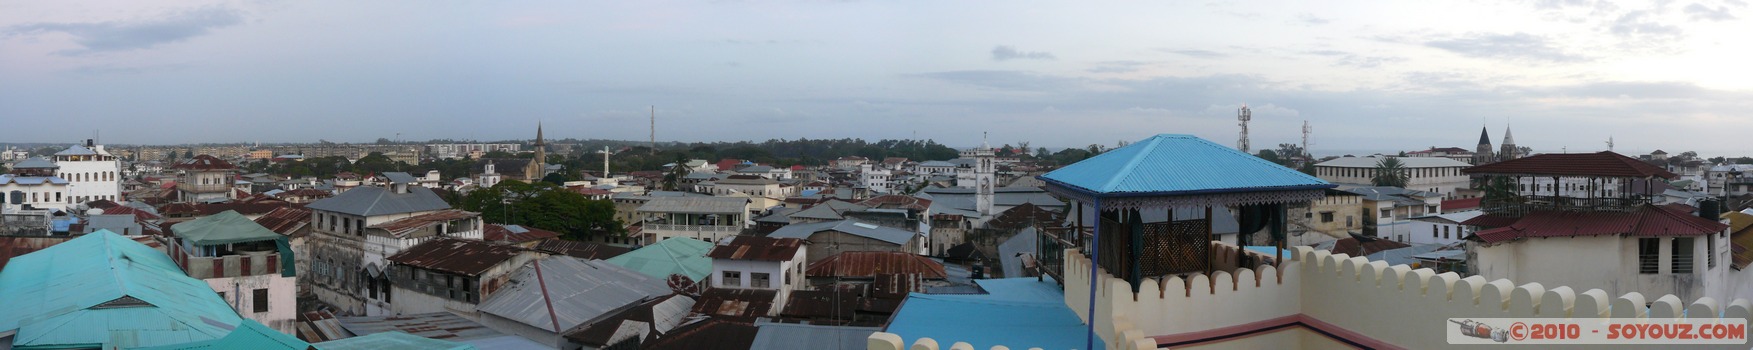 Zanzibar - View of Stone Town from 236 Hurumzi Hotel tower top
Mots-clés: panorama